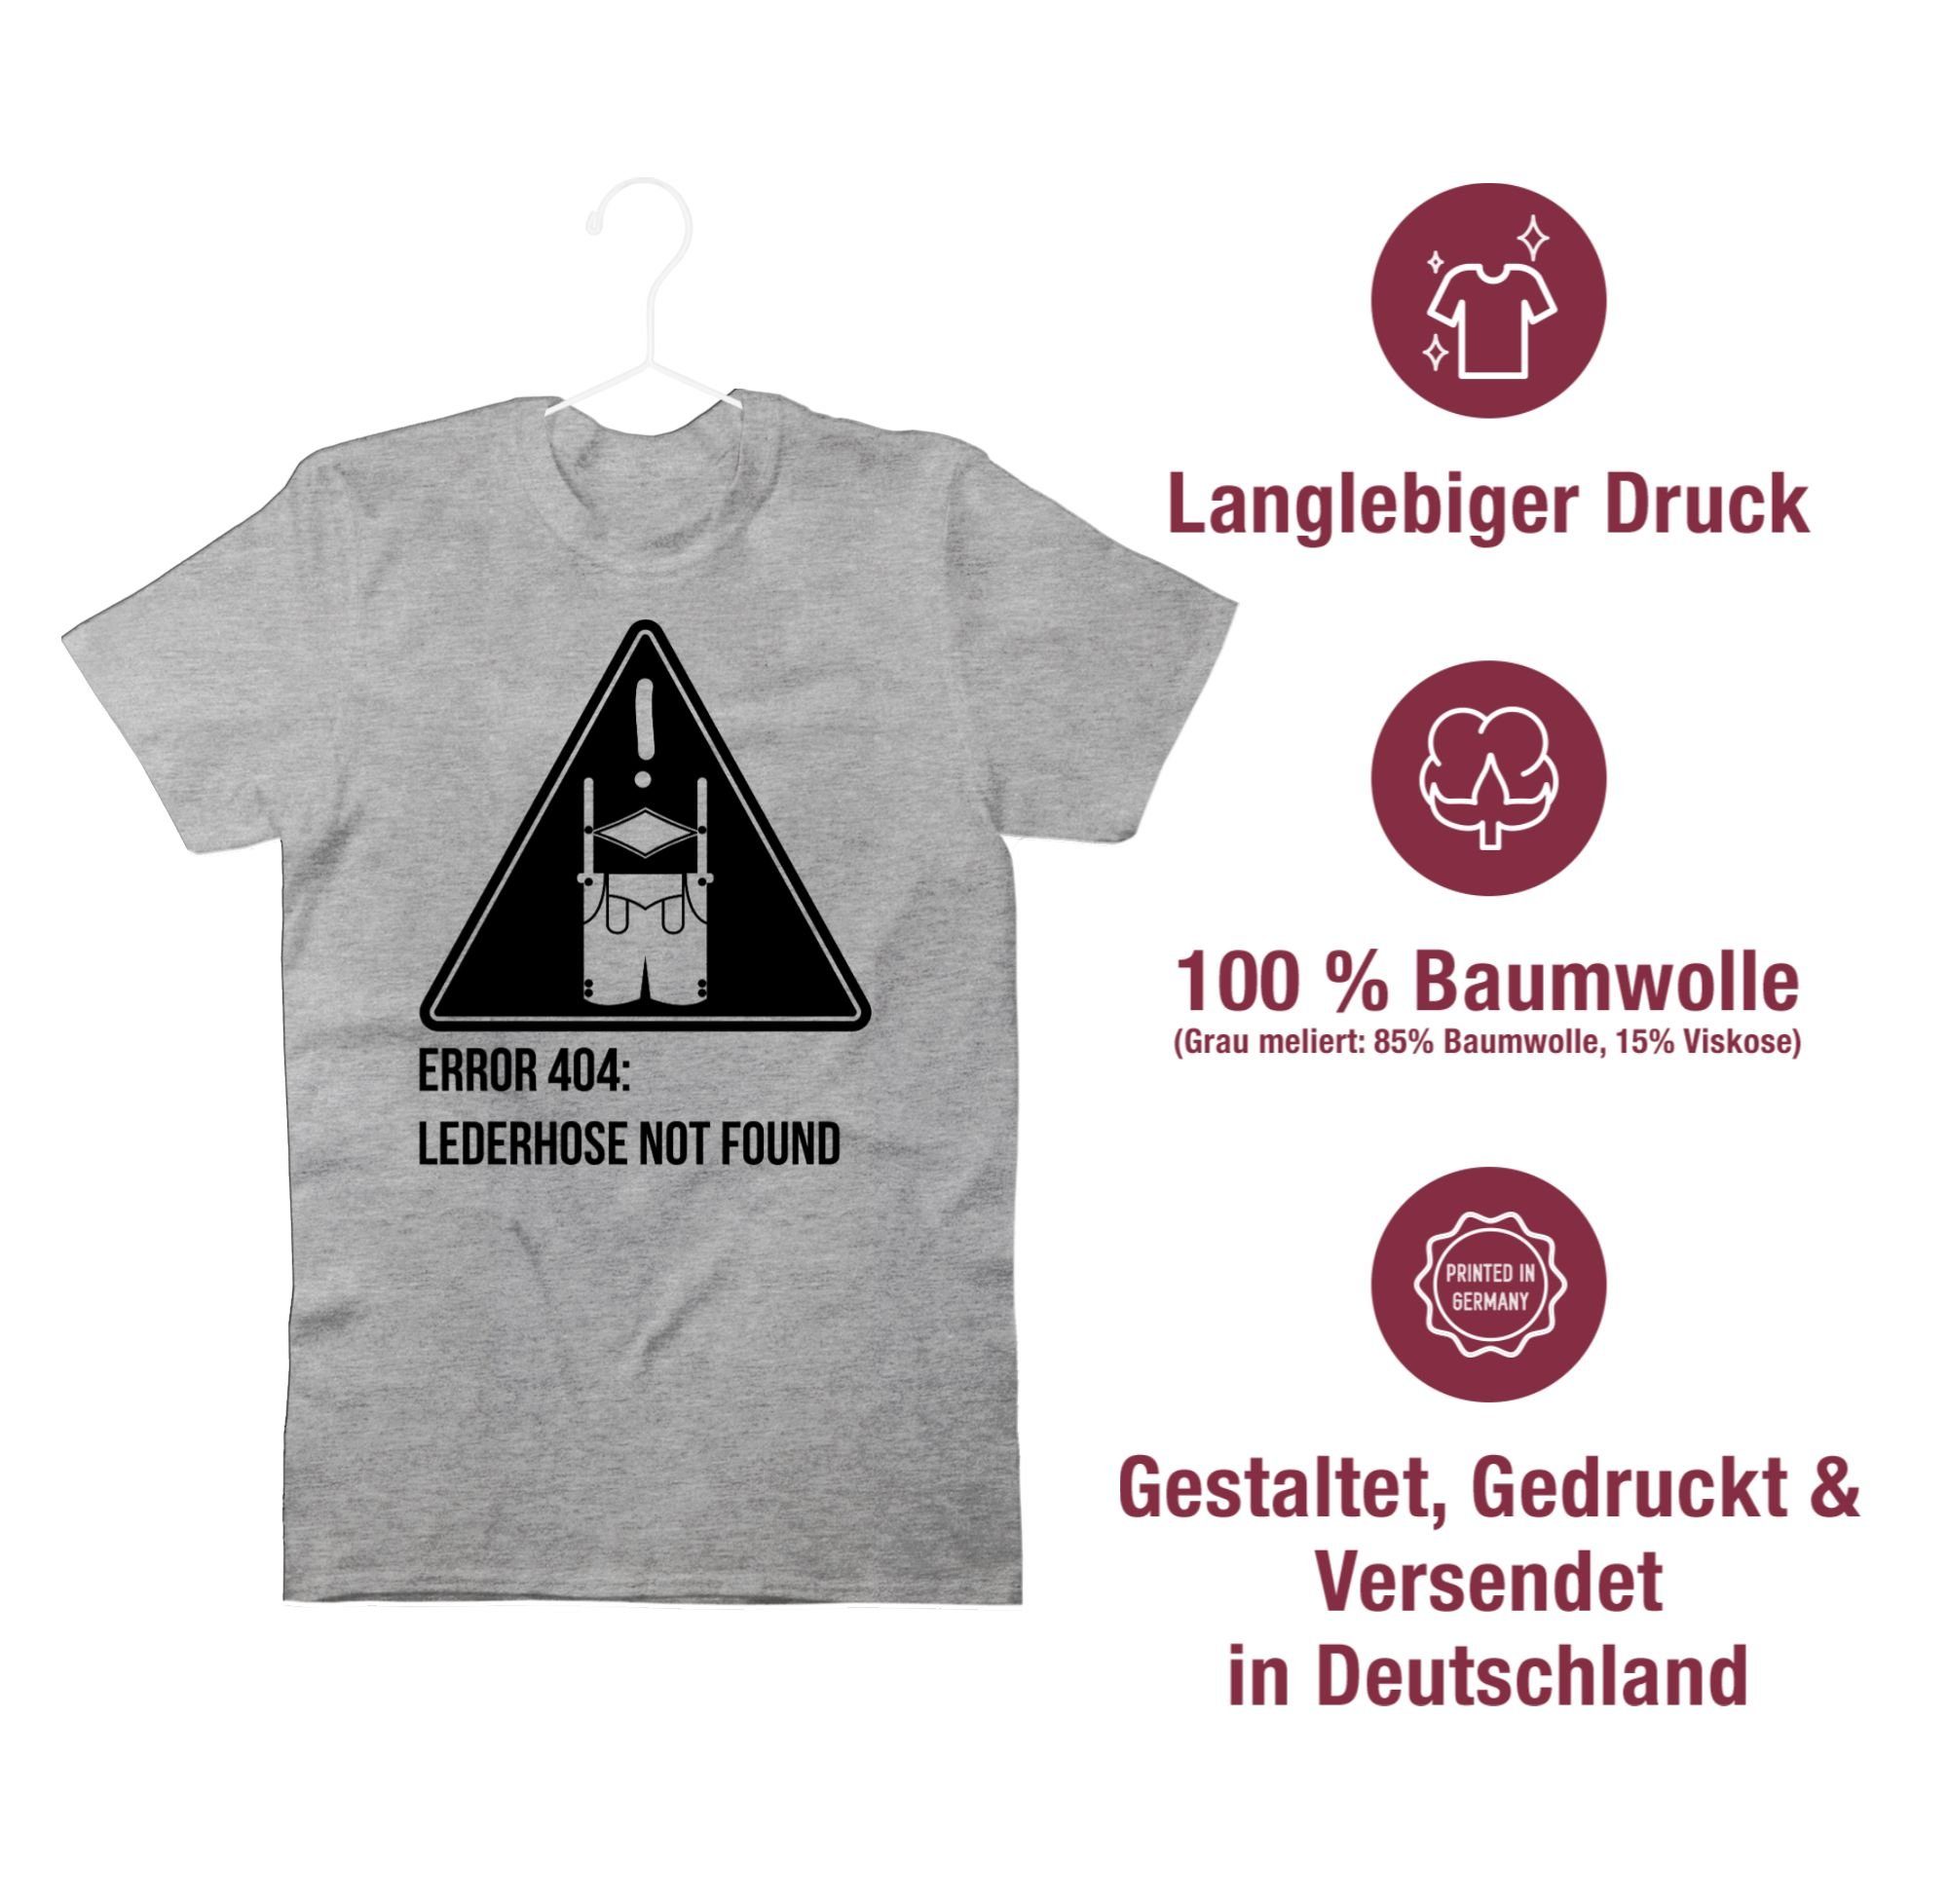 Shirtracer T-Shirt Error 404: Lederhose Oktoberfest Mode found not Grau für Herren 1 meliert